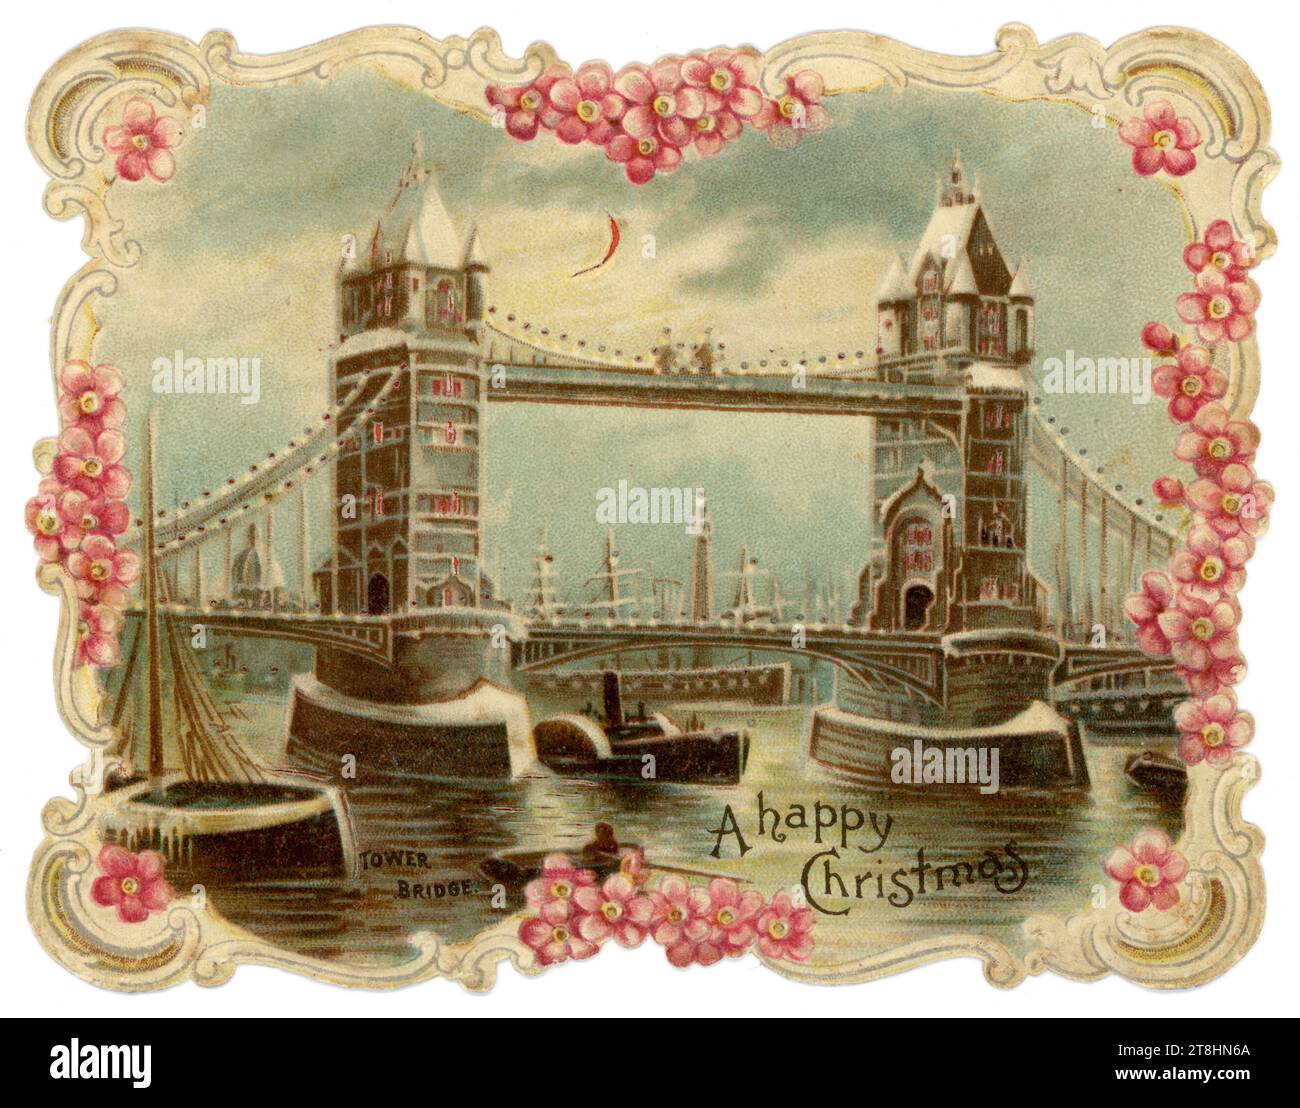 Originale wunderschöne viktorianische Weihnachtsgrüßkarte mit „Hold to Light“-Neuheit von Tower Bridge, London. Paddeln Sie den Dampfgarer darunter. Greeting is Wishing a Happy Christmas' London, England, Großbritannien um 1880's 1890s Stockfoto